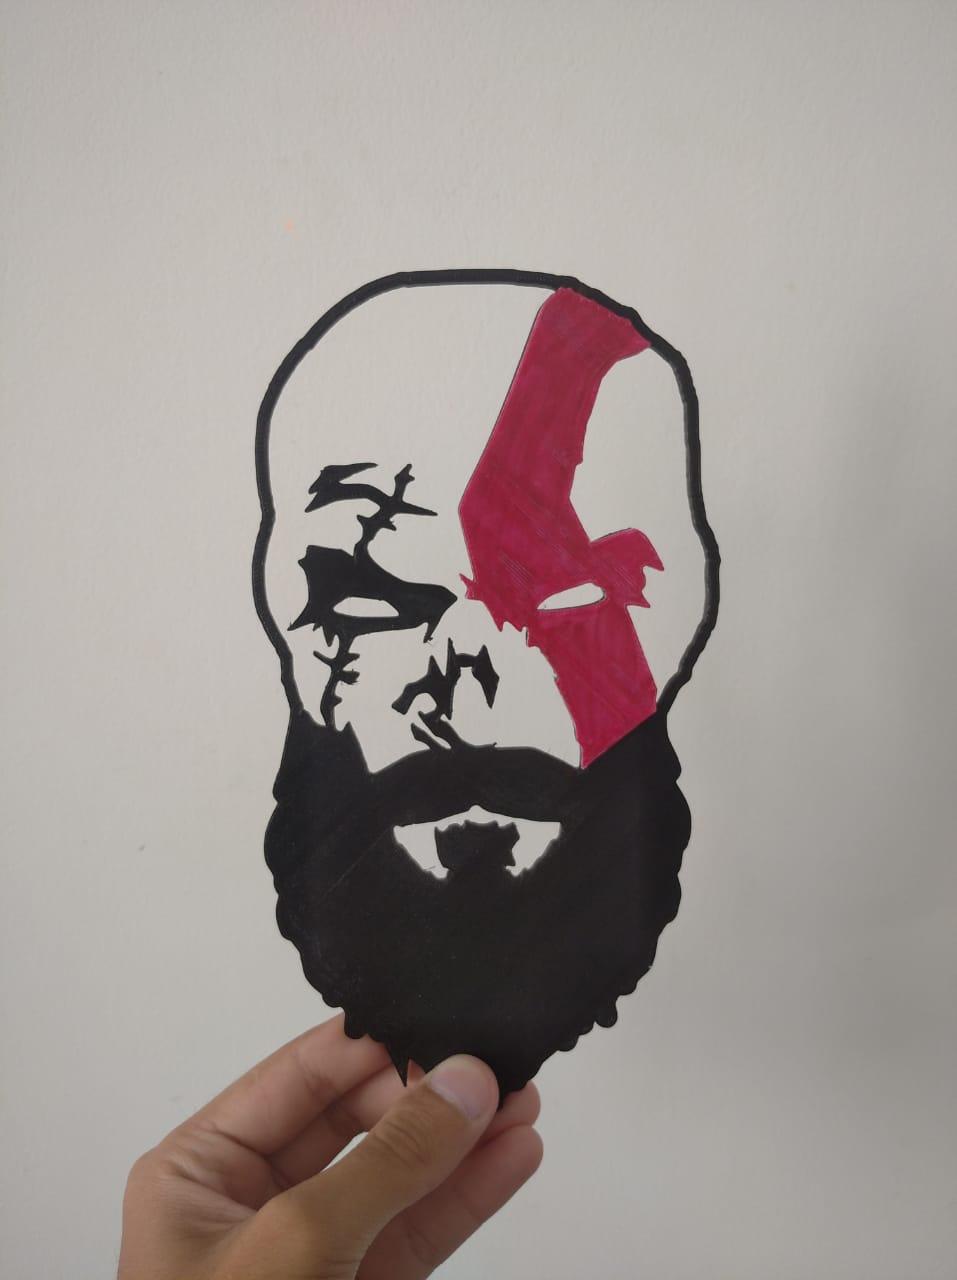 Kratos God of War 2D Art.3mf 3d model